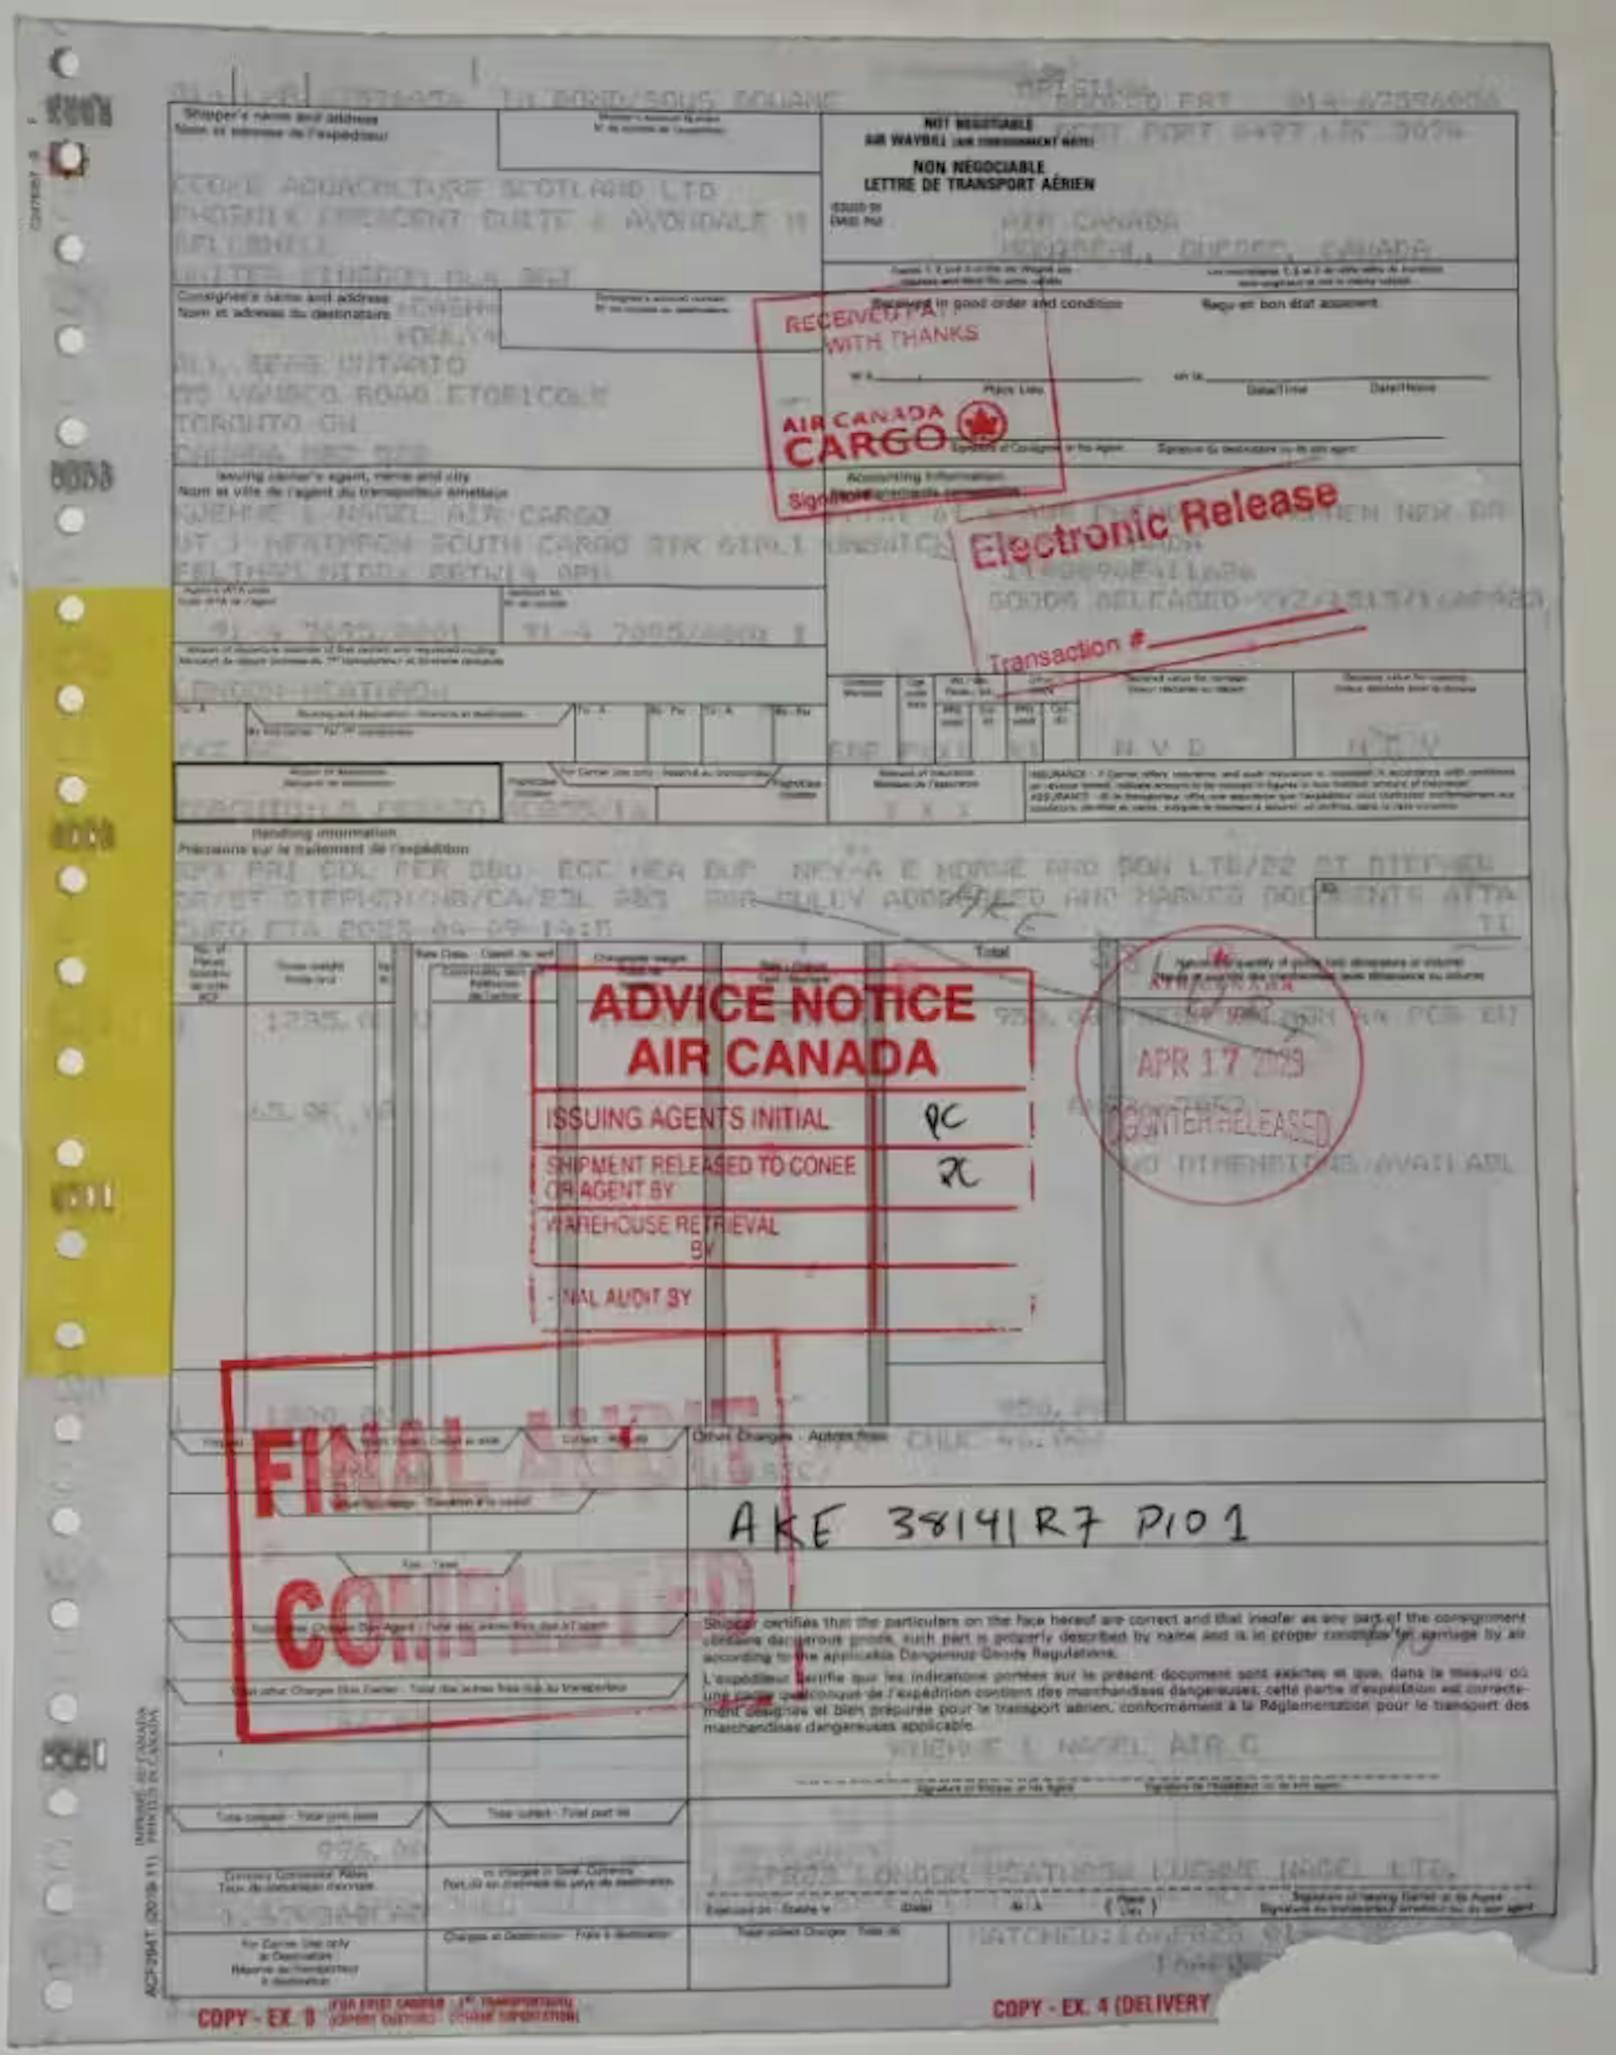 Die Polizei veröffentlichte auch ein Bild des duplizierten Luftfrachtbriefs, der zum Abholen des Goldes verwendet wurde.